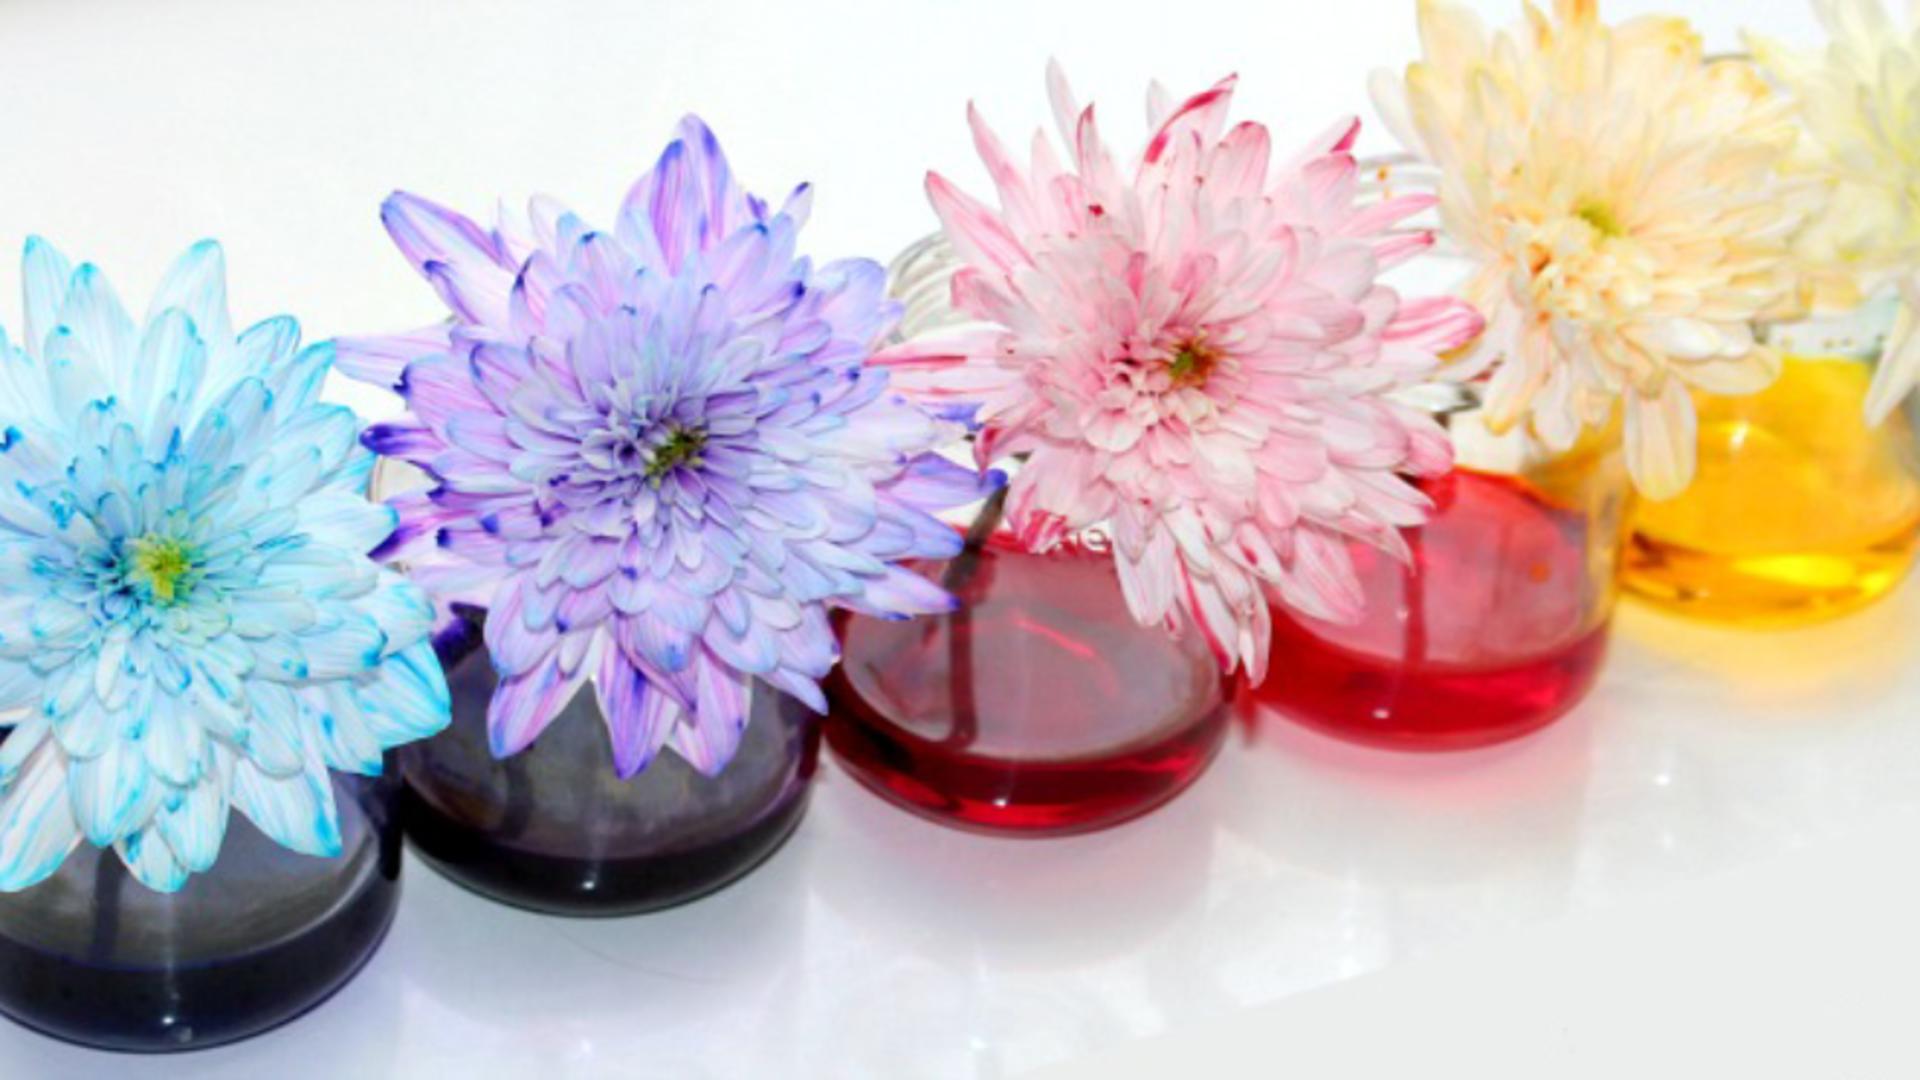 Metoda extraordinară prin care colorezi florile în mod natural. Ai nevoie să adaugi un singur ingredient în apă